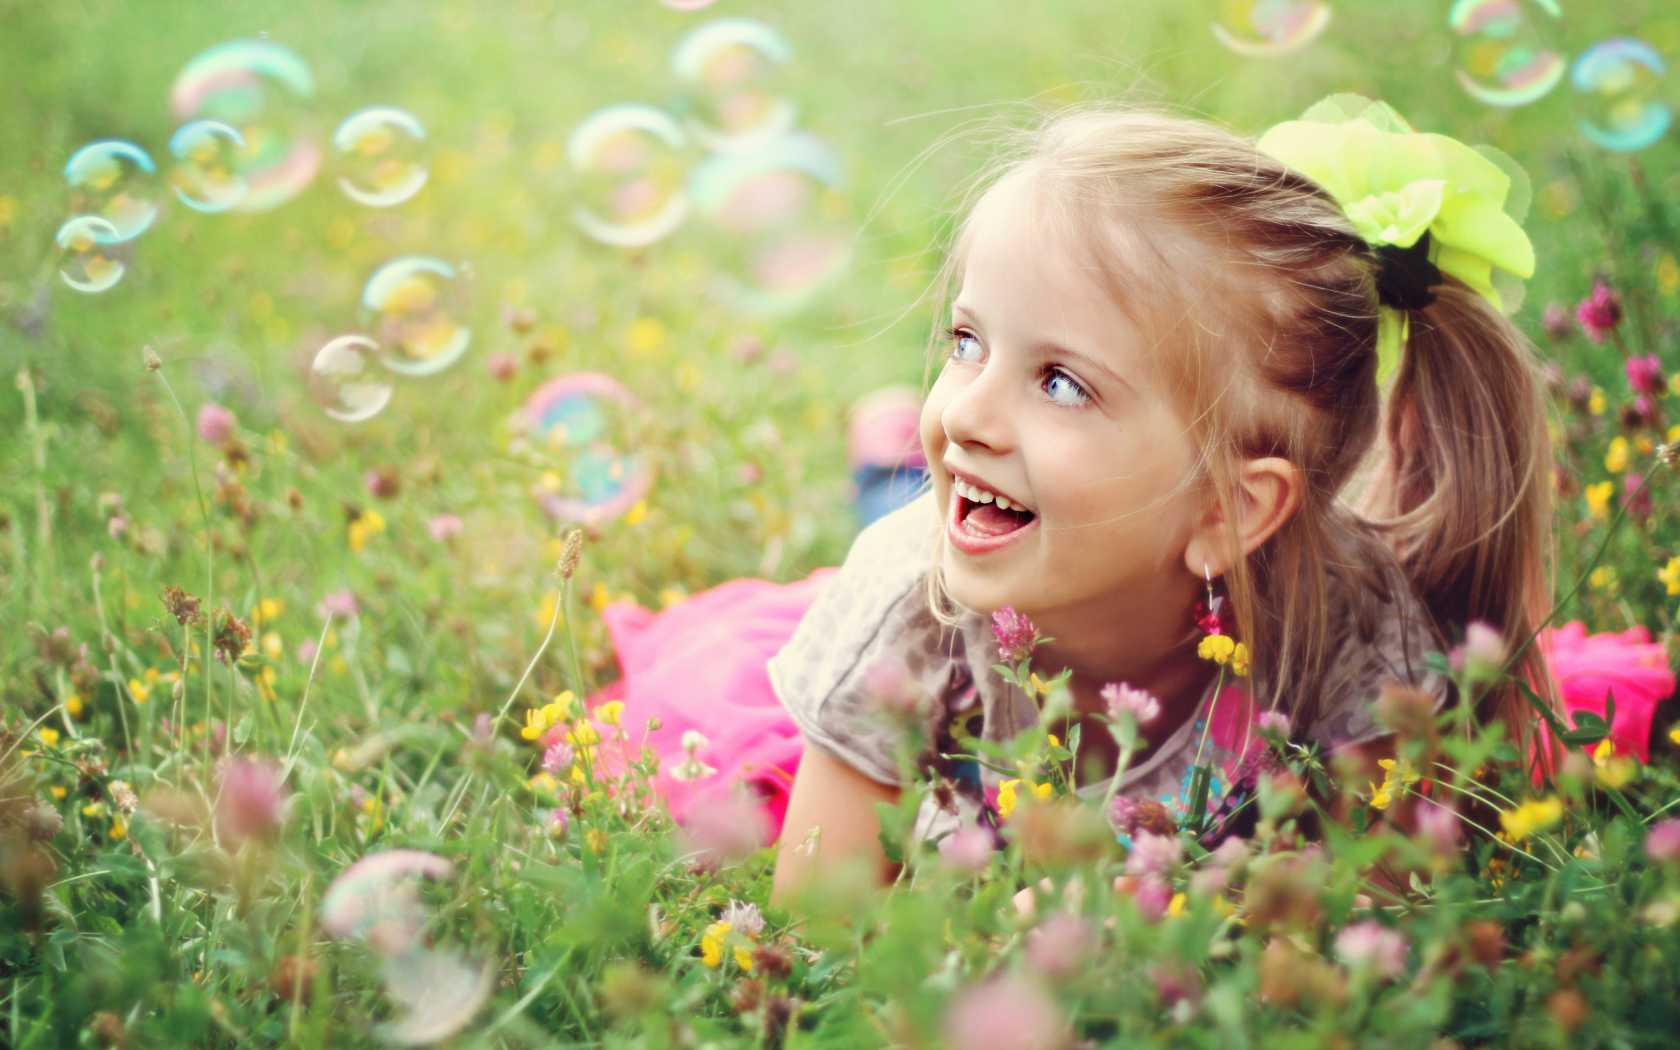 Веселая девочка лежит на траве с мыльными пузырями